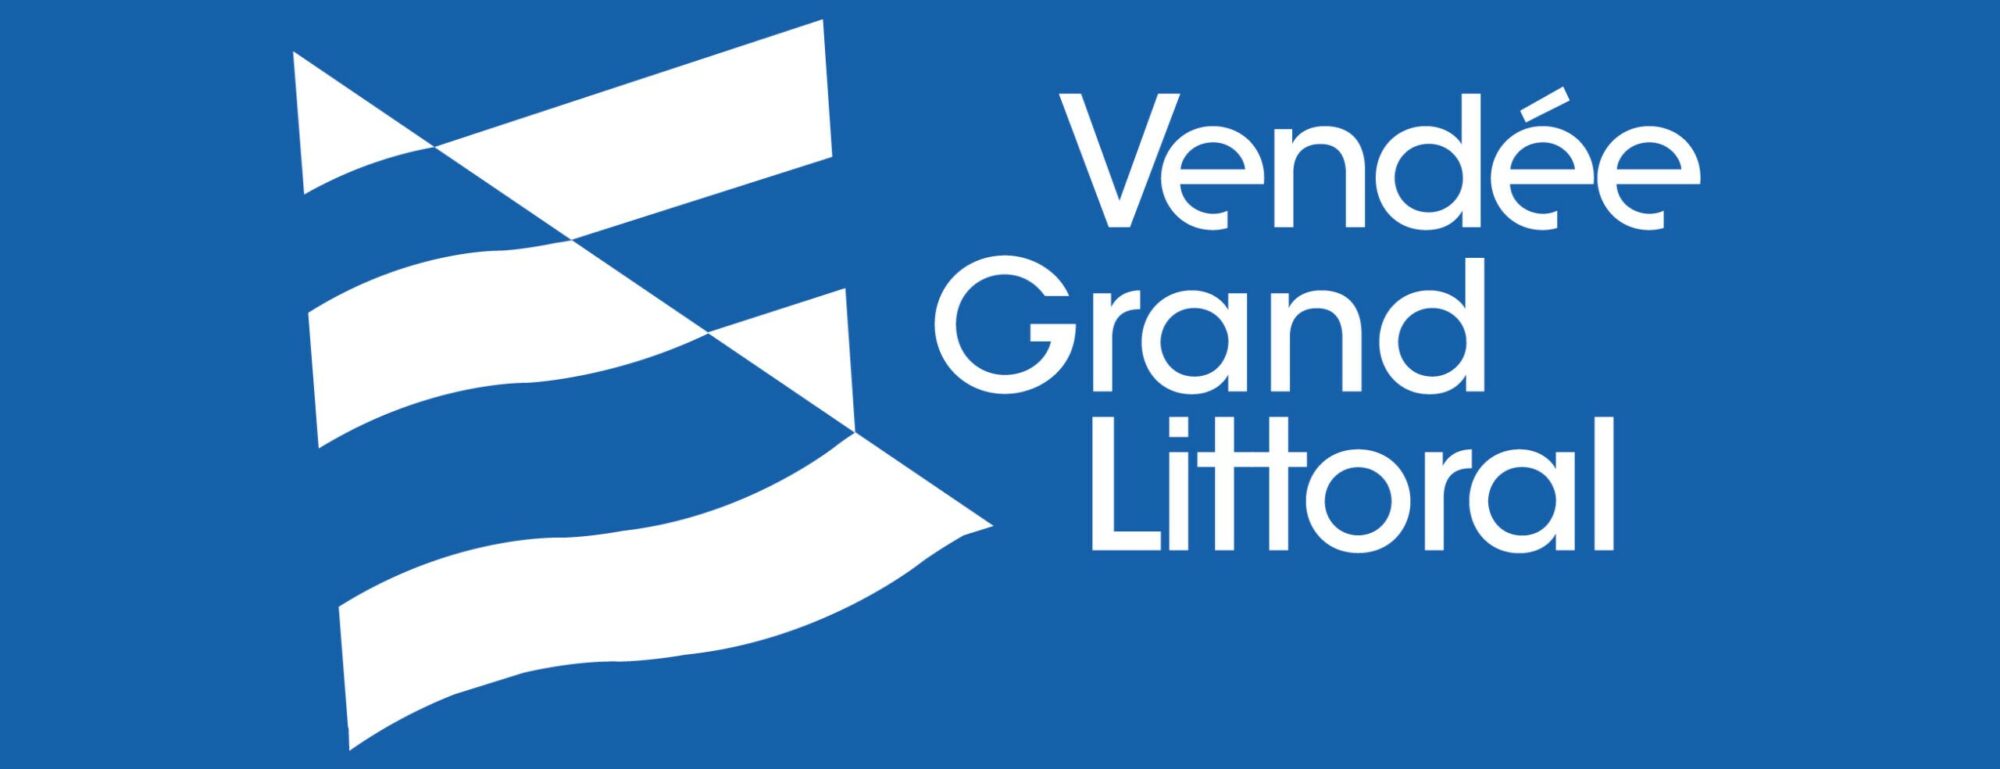 Vendee_Grand_Littoral_logo-bleu-01-scaled